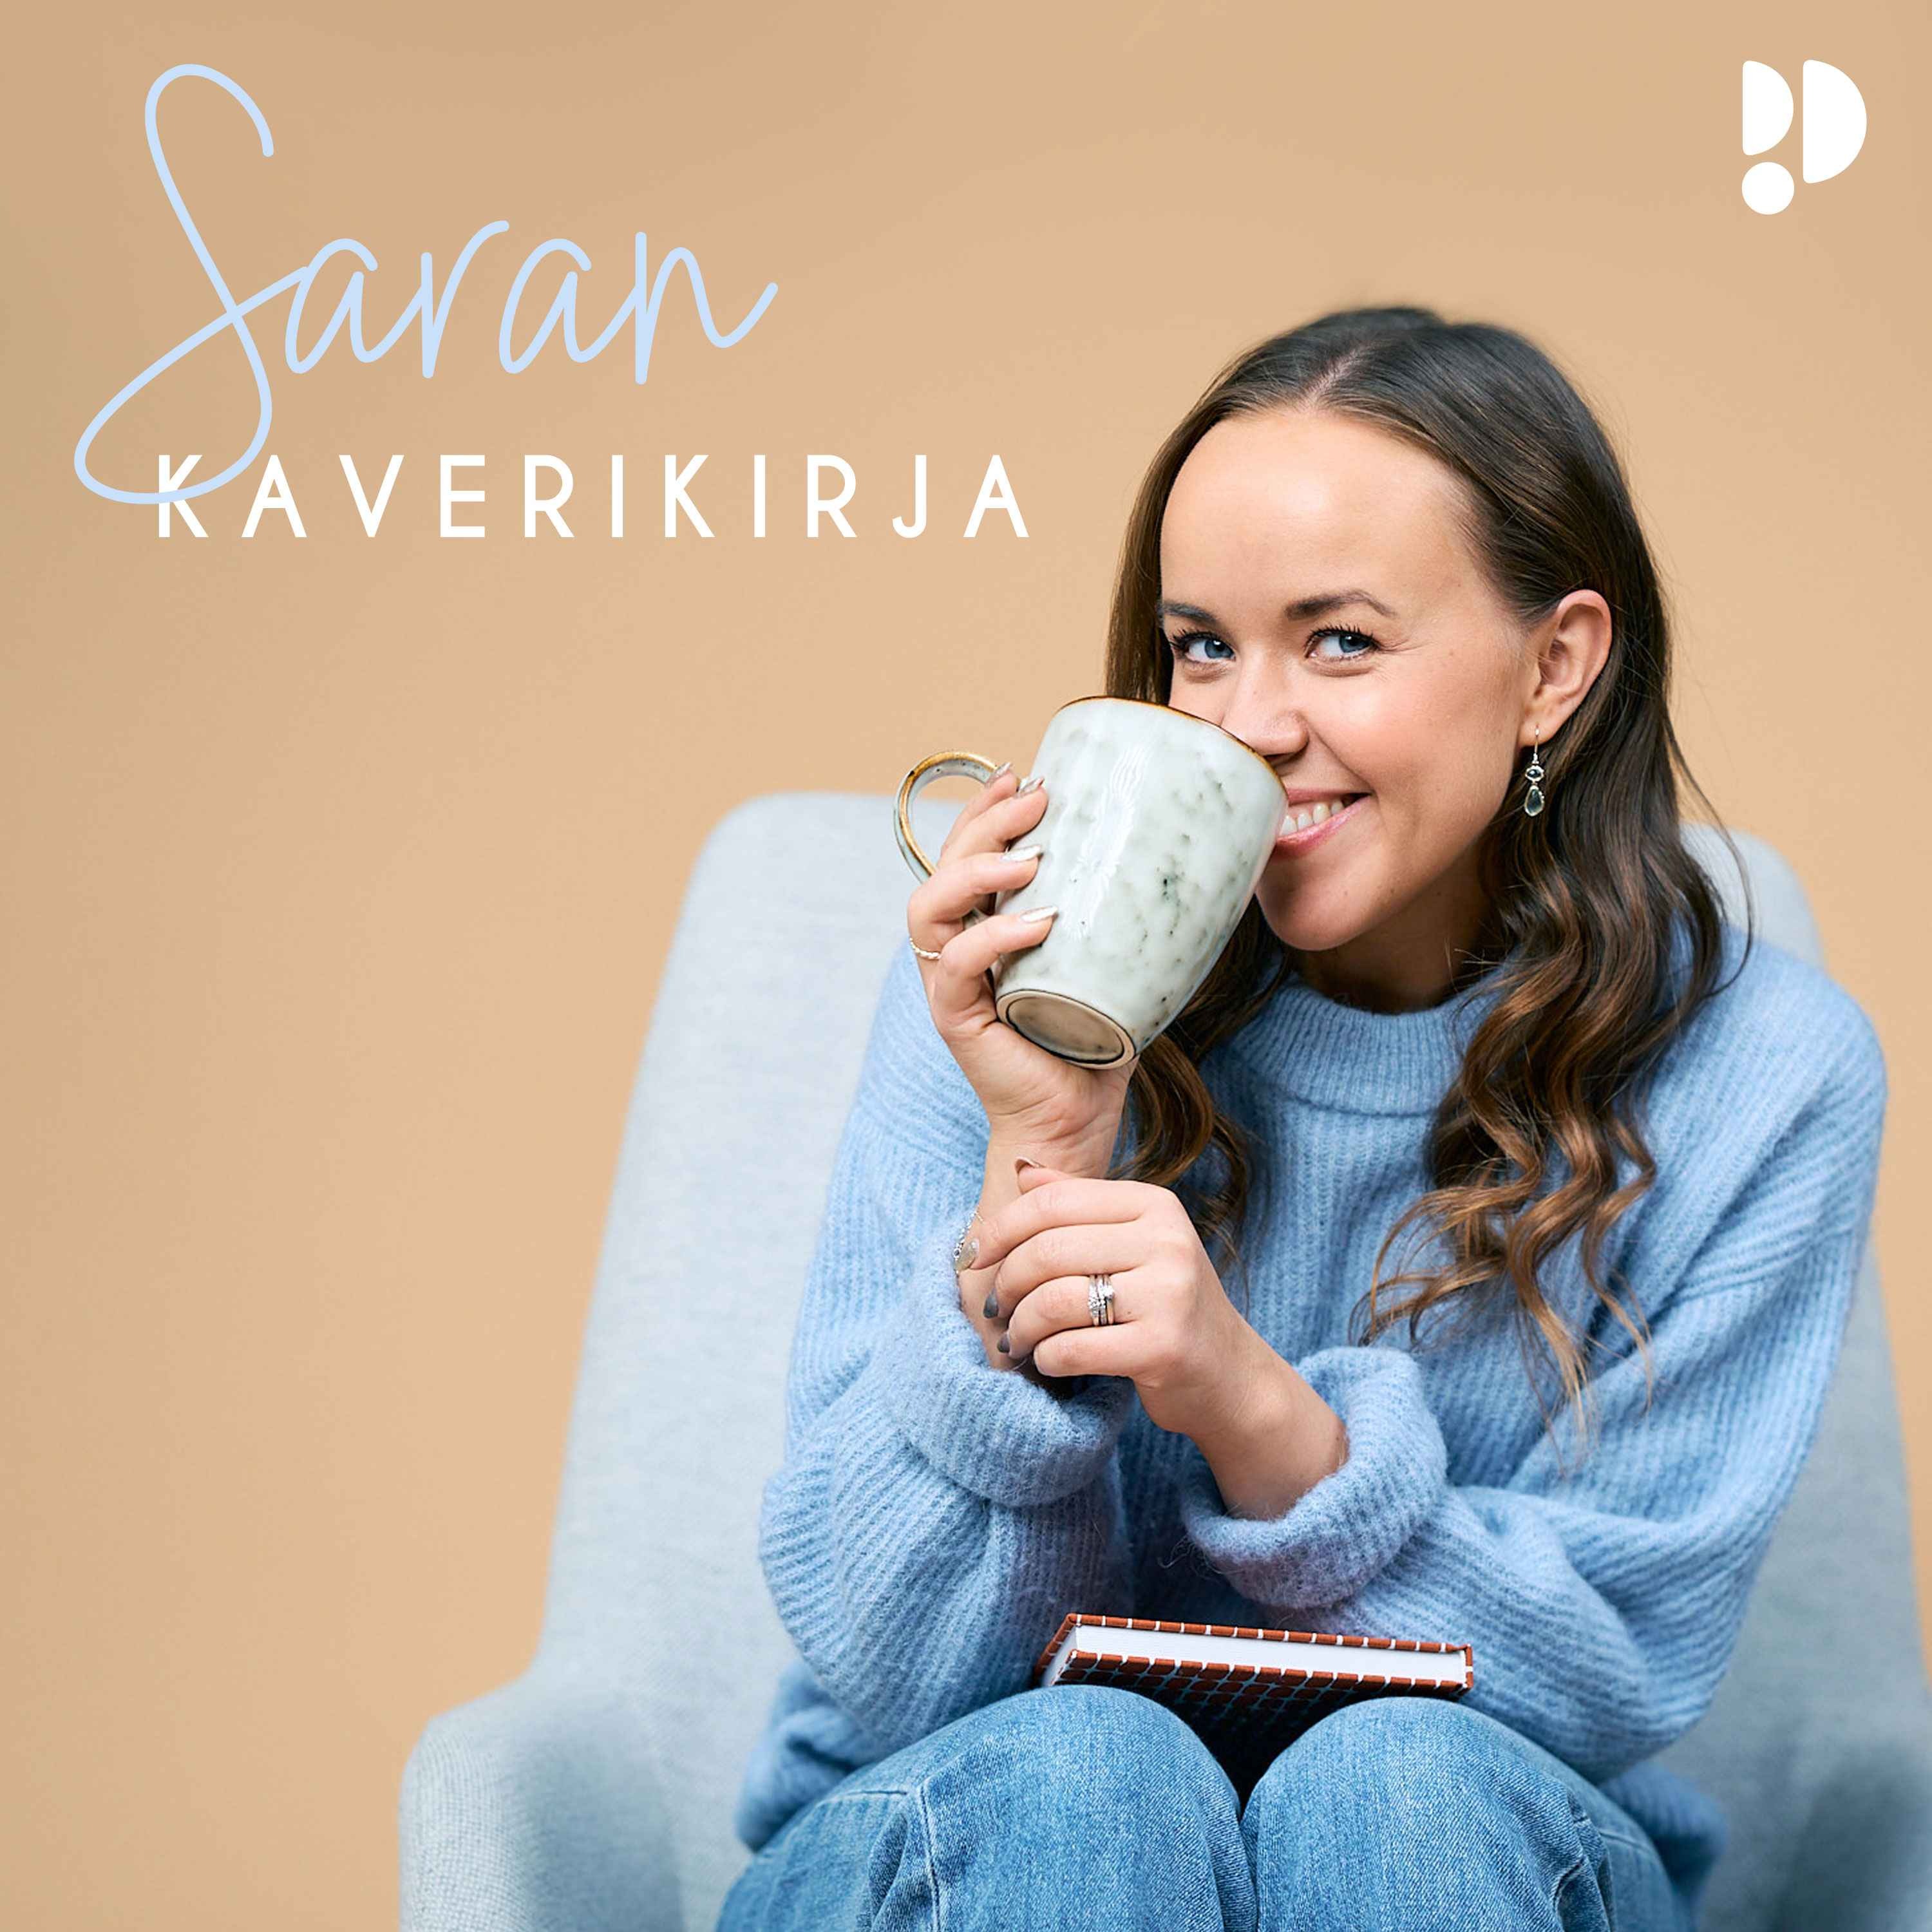 cover art for Saran kaverikirja starttaa ystävänpäivänä 14.2